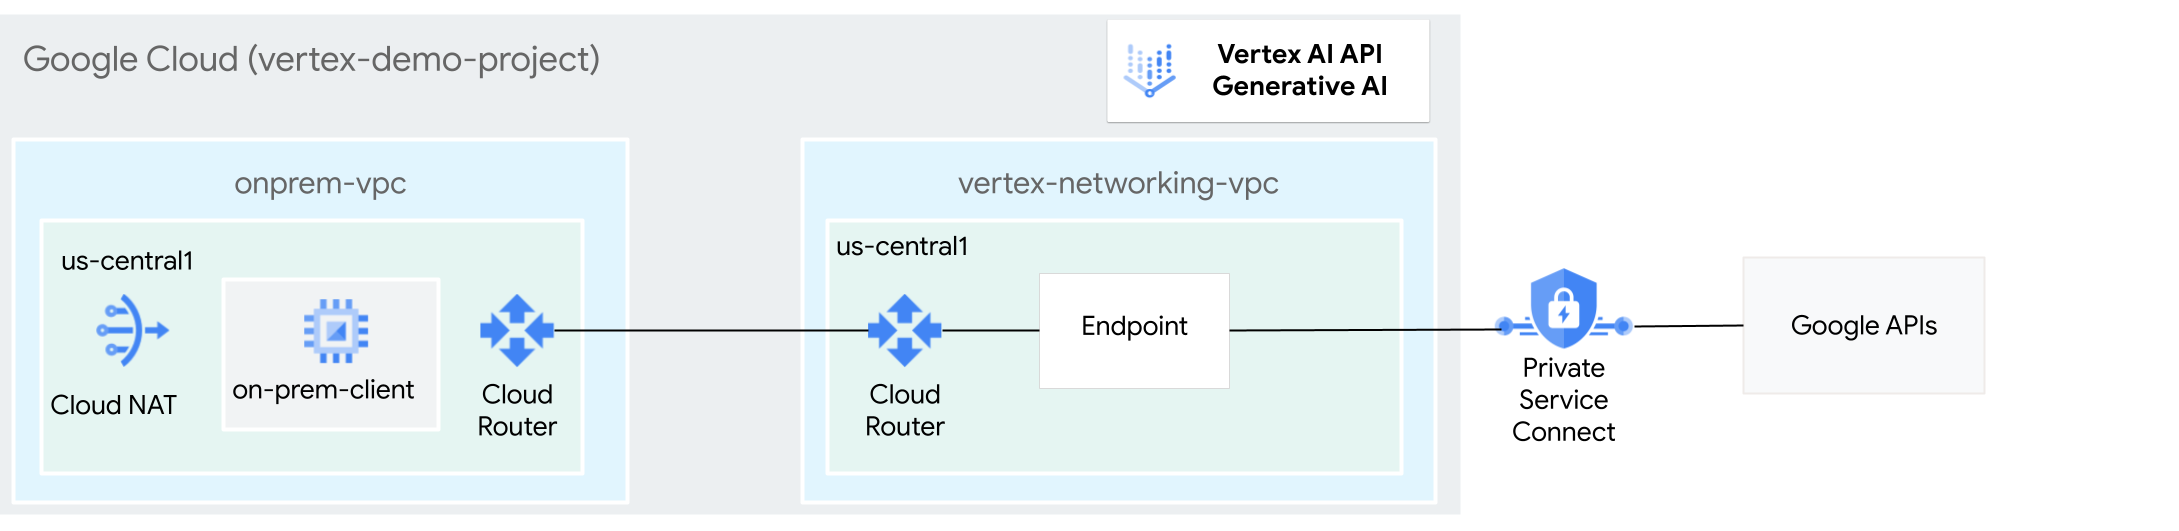 Private Service Connect を使用して Vertex AI での生成 AI にアクセスするアーキテクチャ図。